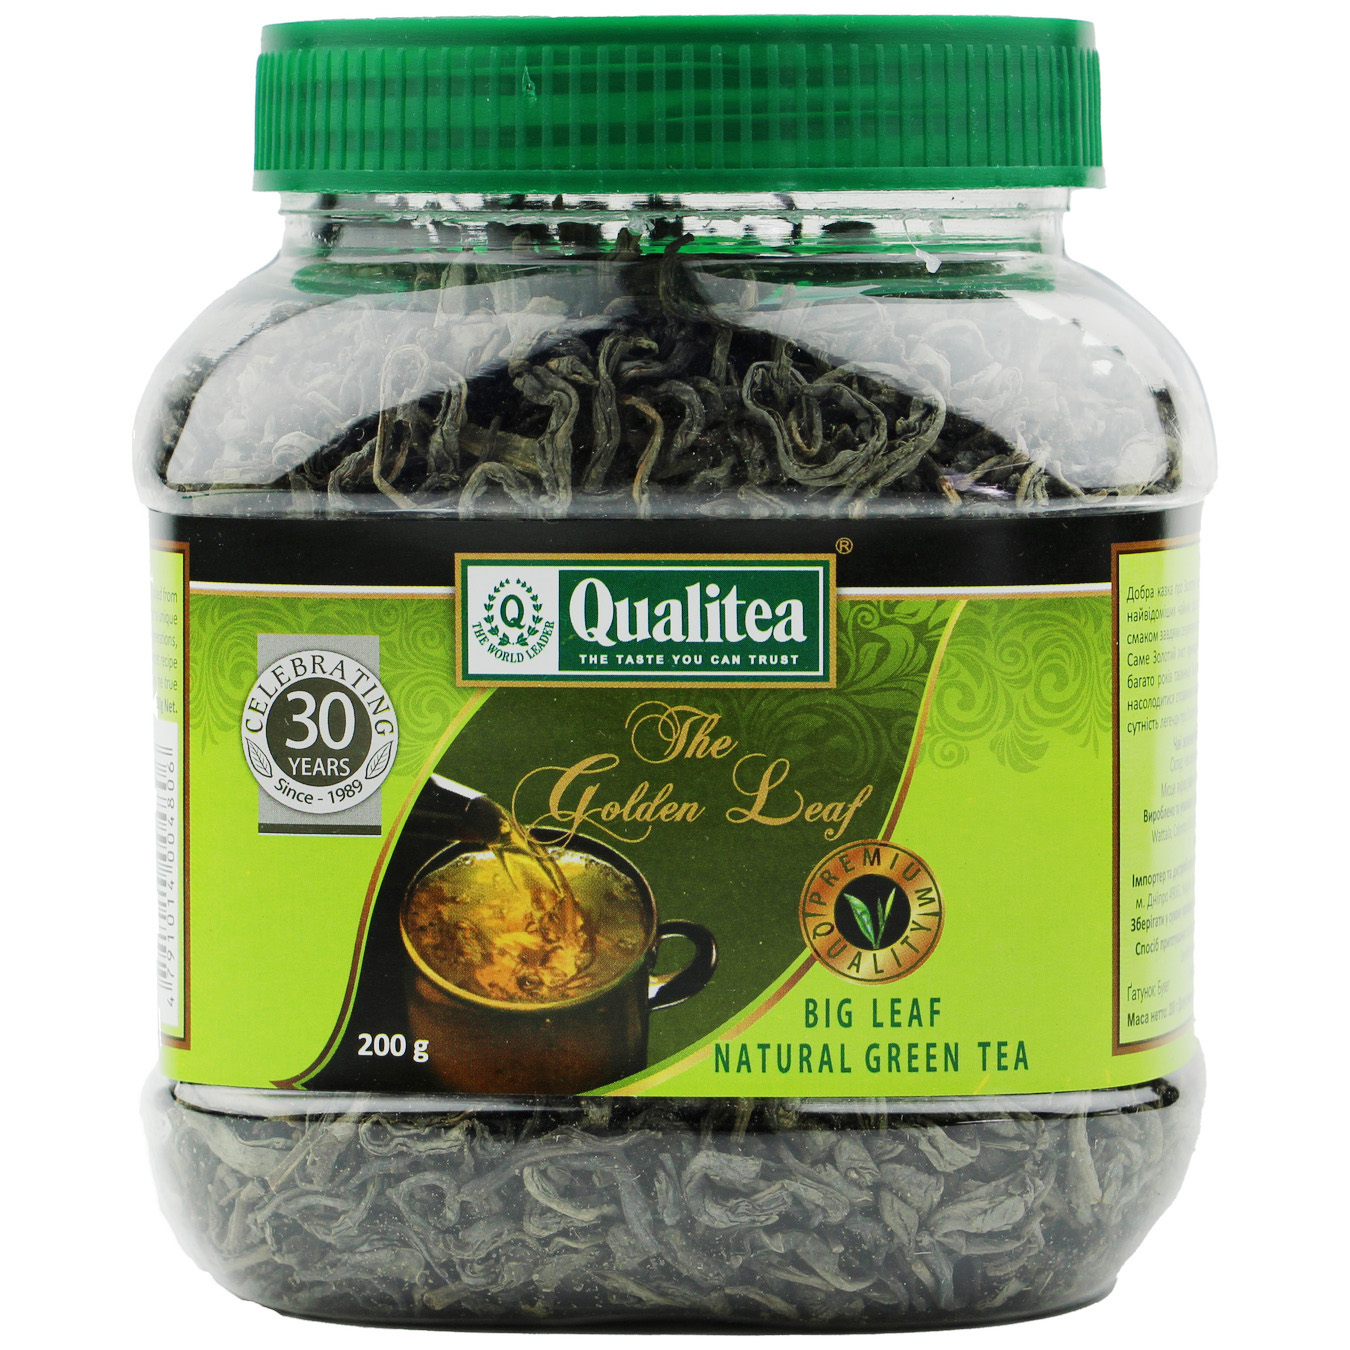 Qualitea Big Leaf Natural Green Tea 200g